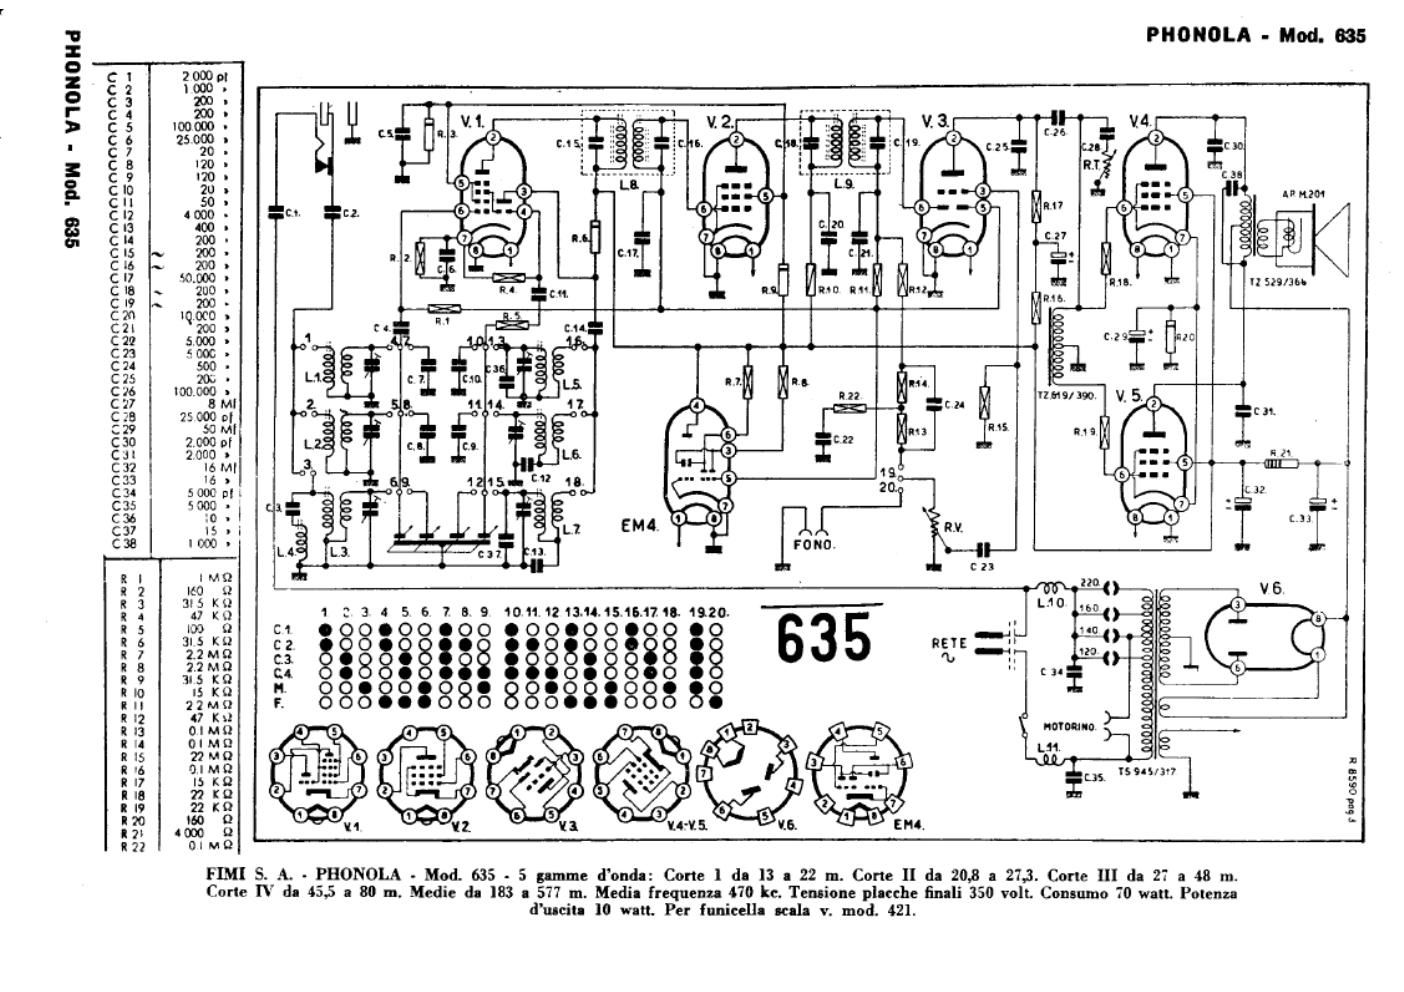 phonola 635 schematic